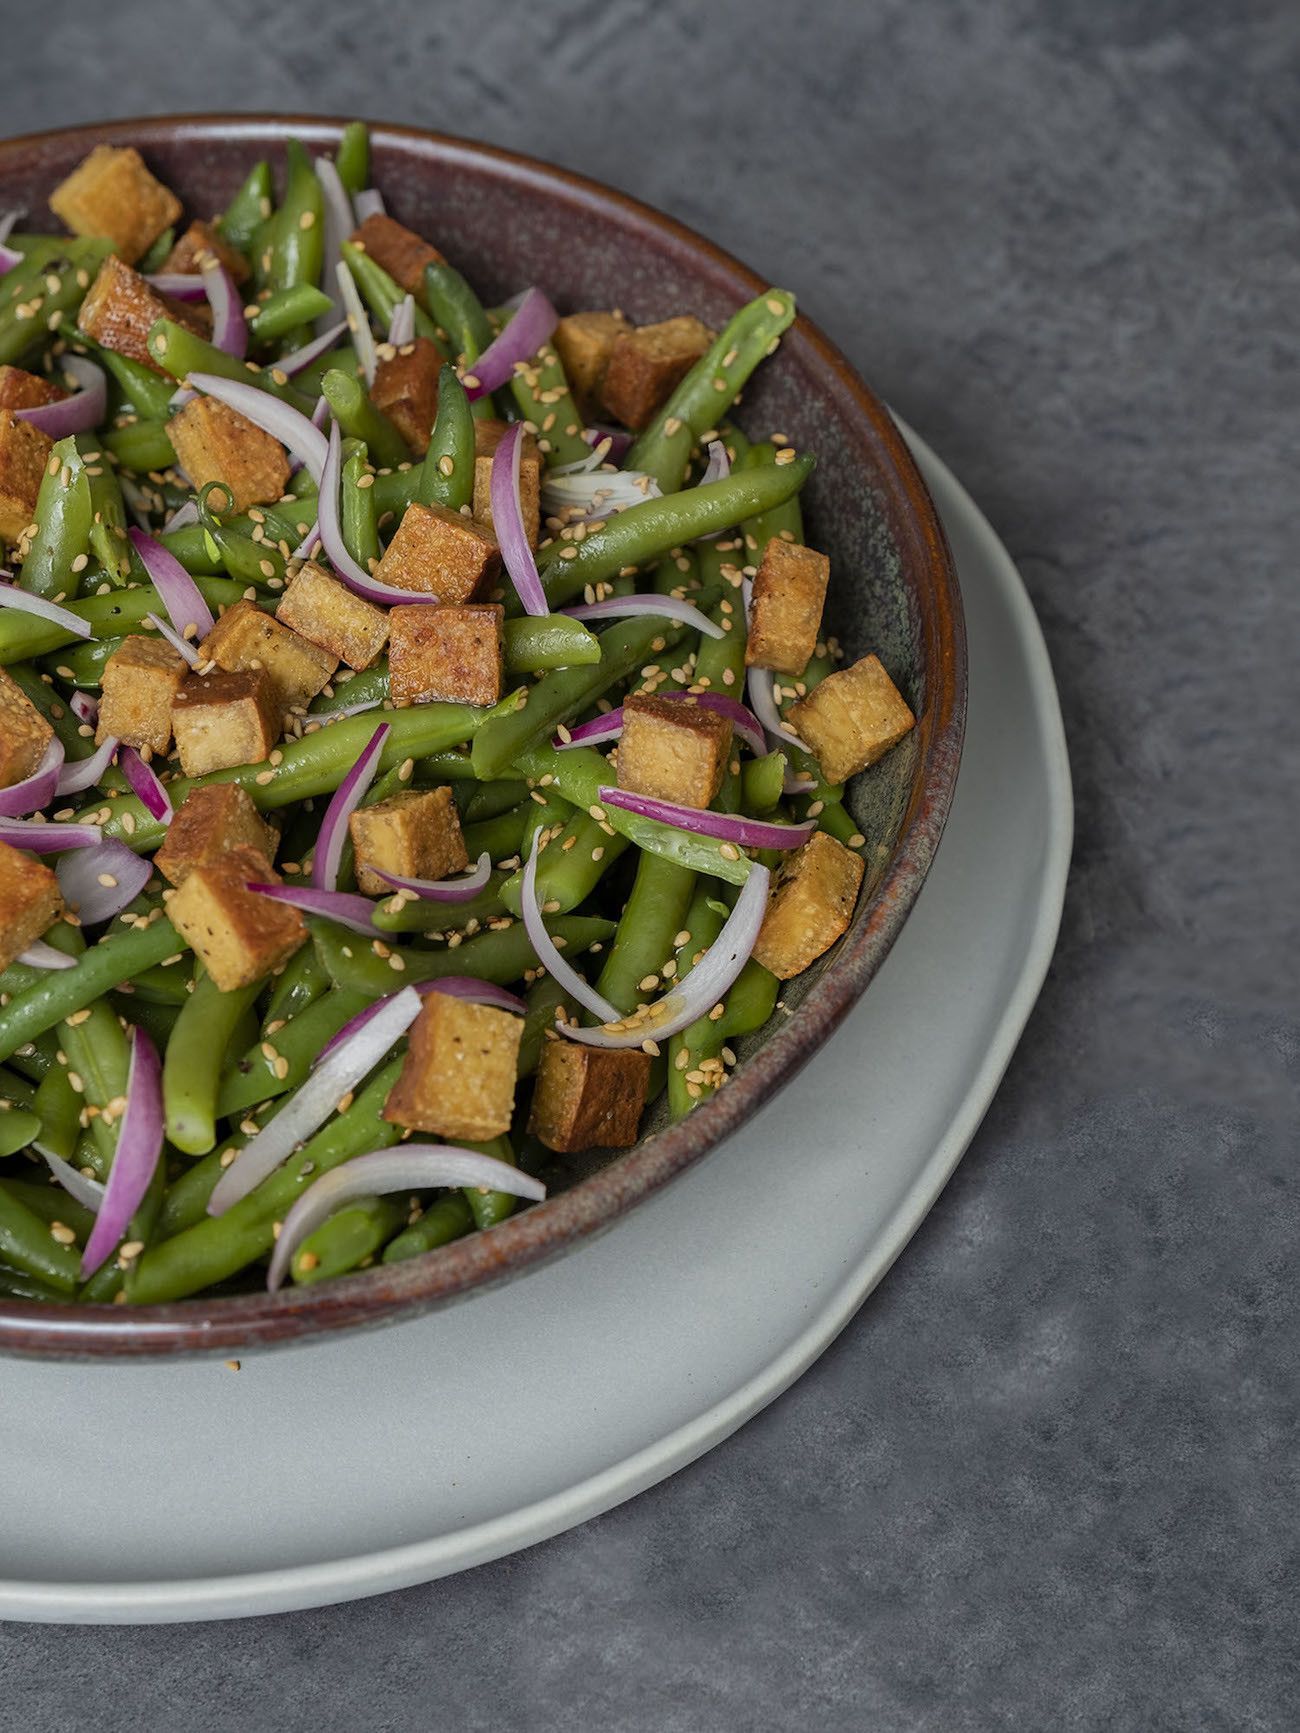 Foodblog, About Fuel, Rezept, Stangenbohnensalat mit geräuchertem Tofu, Sesam und roten Zwiebeln, Teller, Vegan, Sesam